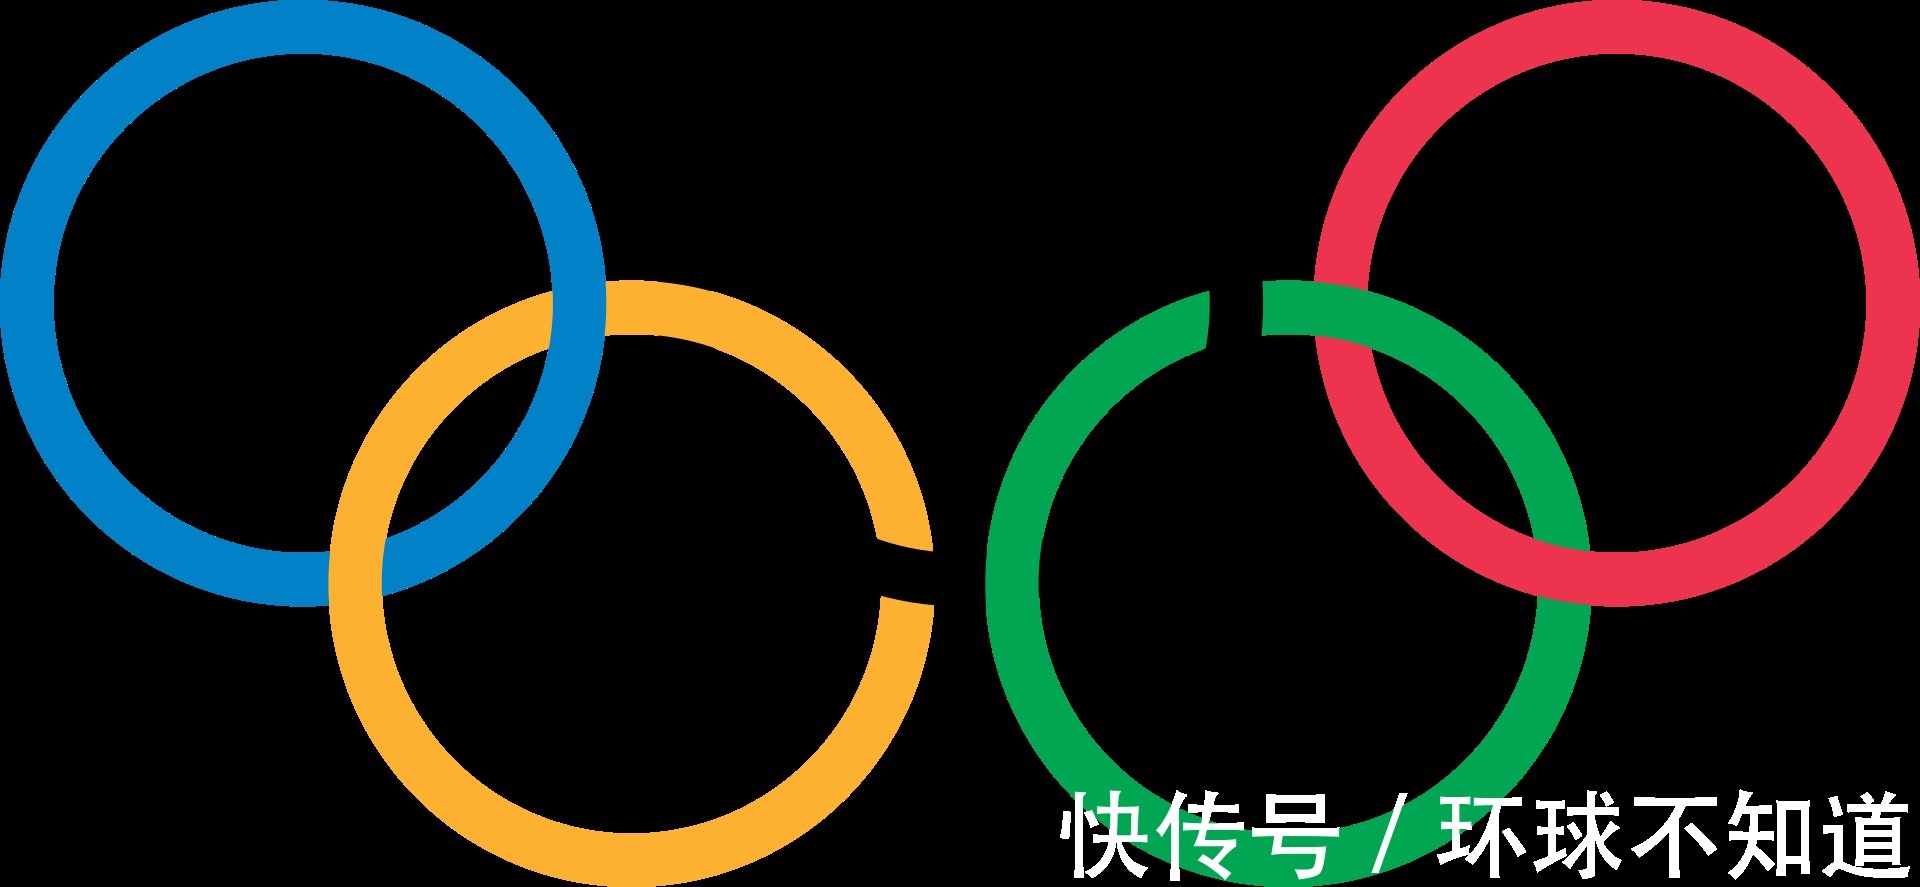 夏奥会和冬奥会总金牌榜 美国过千 中国第7 其中2国已不复存在 全网搜